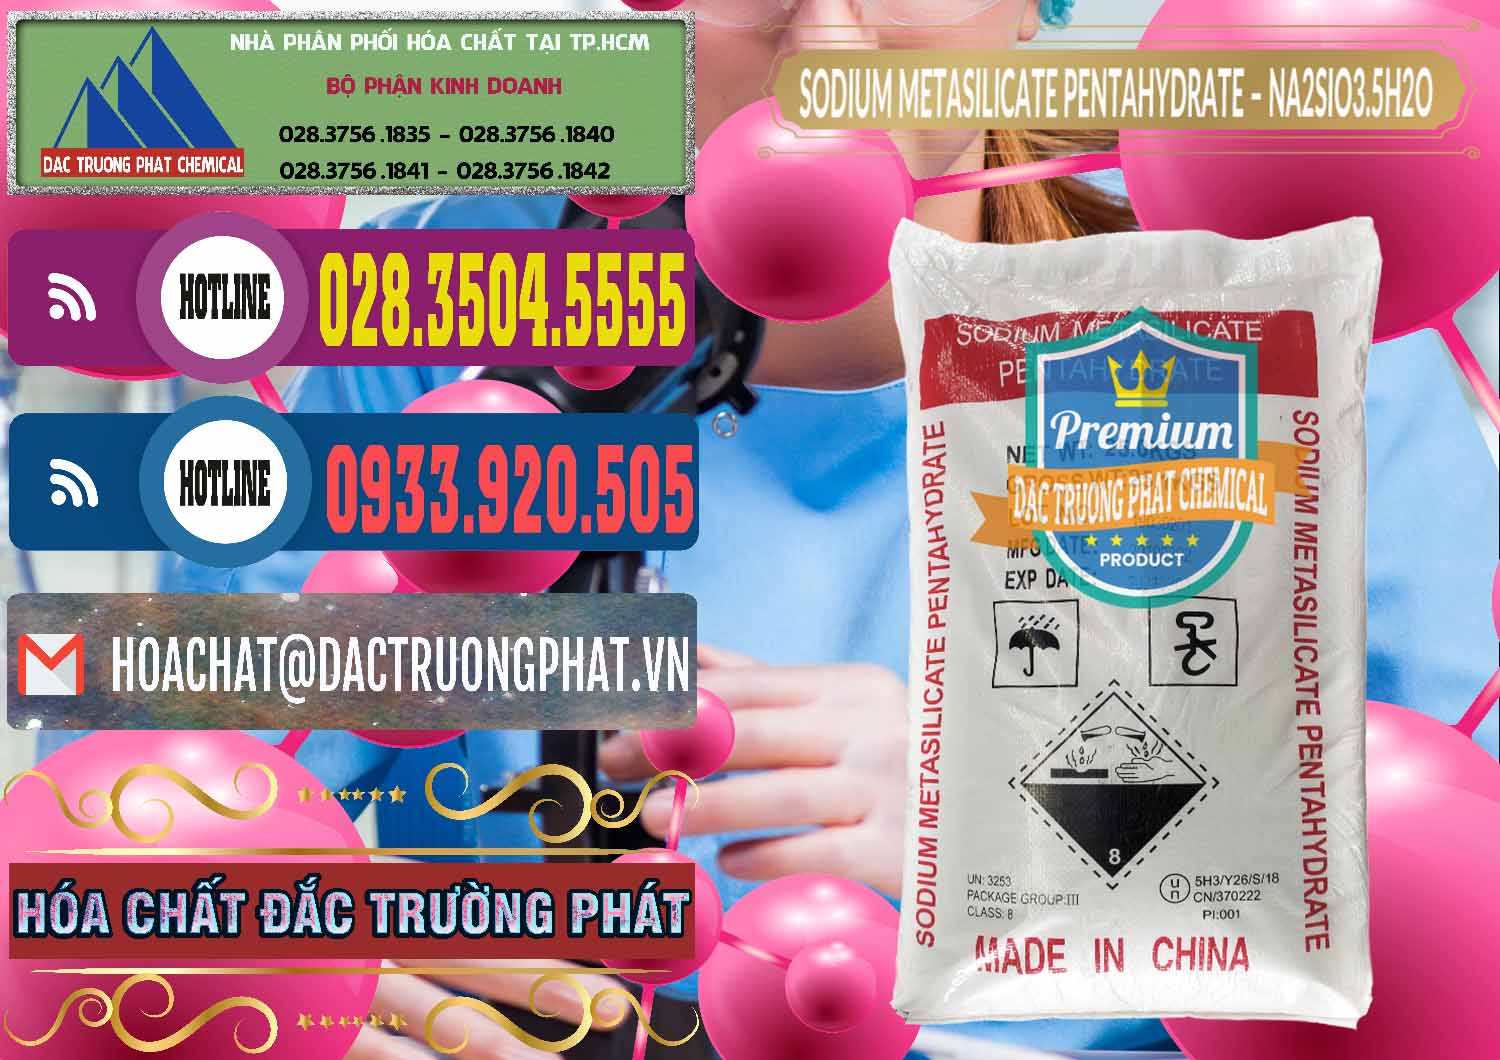 Cty chuyên phân phối & bán Sodium Metasilicate Pentahydrate – Silicate Bột Trung Quốc China - 0147 - Phân phối _ cung ứng hóa chất tại TP.HCM - muabanhoachat.com.vn